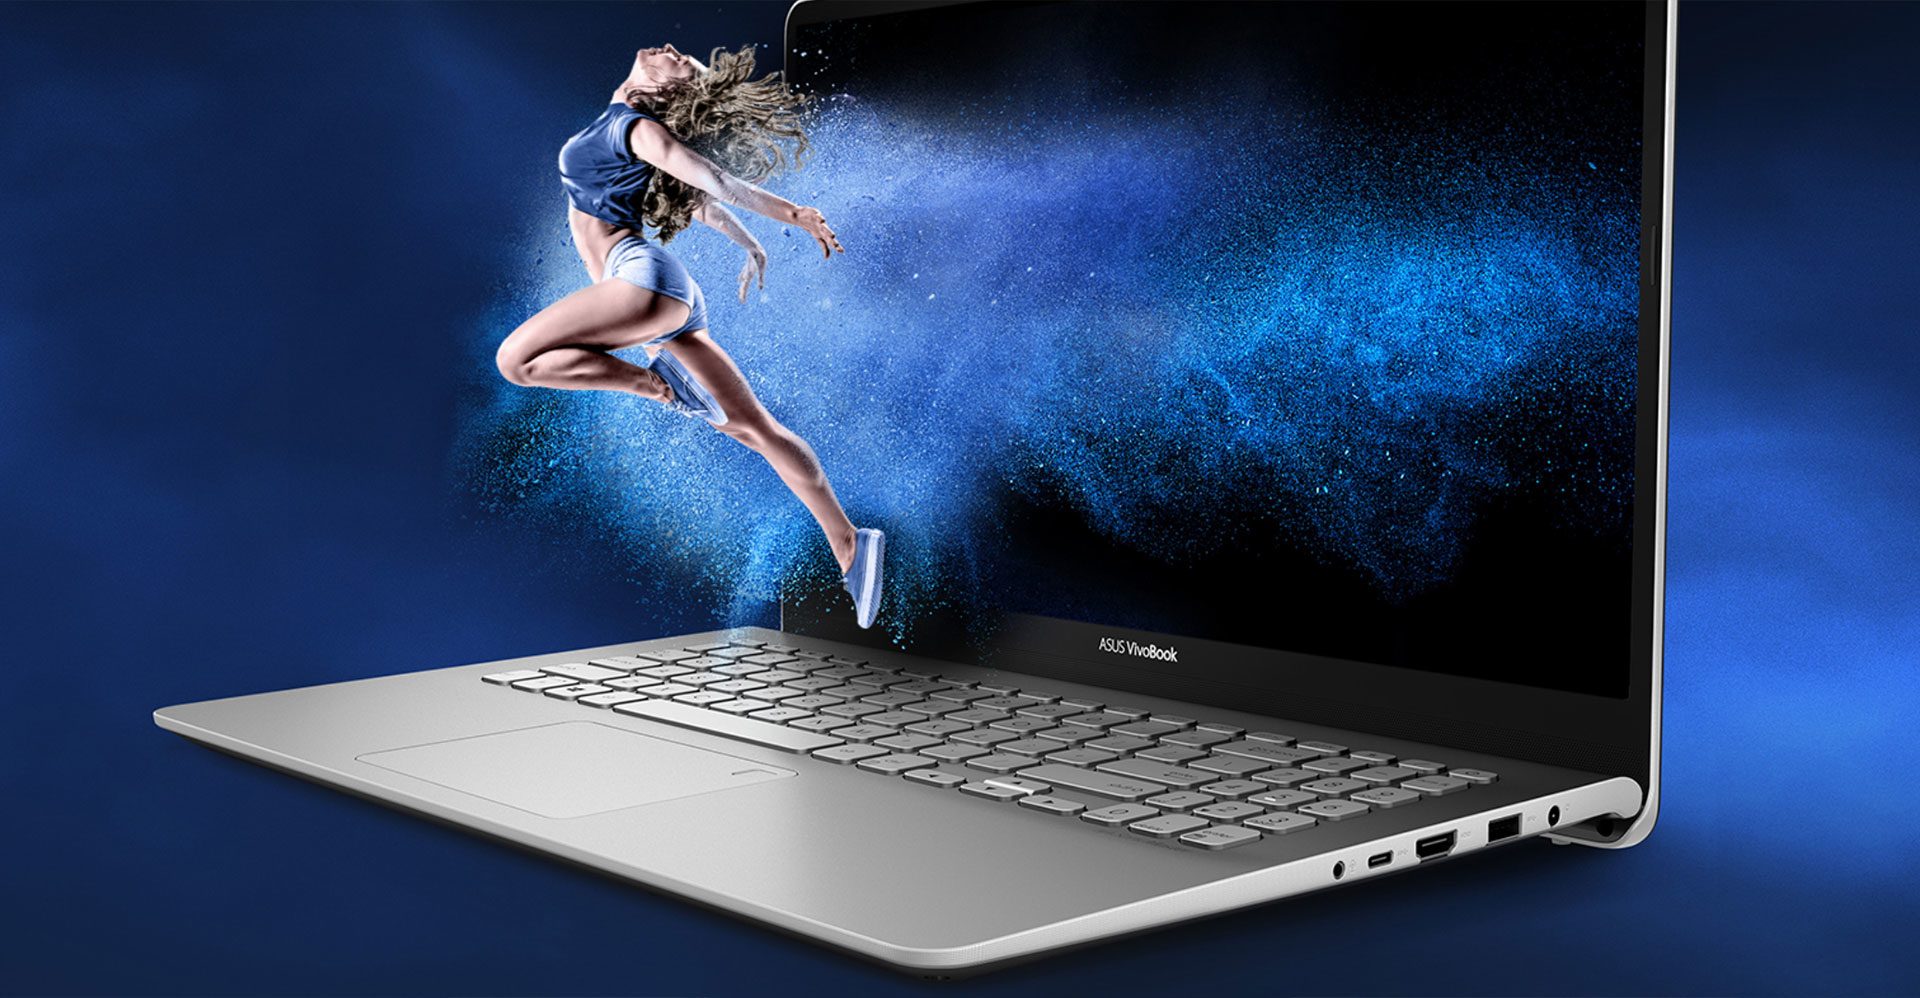 Asus VivoBook S15 S530 review (S530UA - i7-8750U, UHD 620 